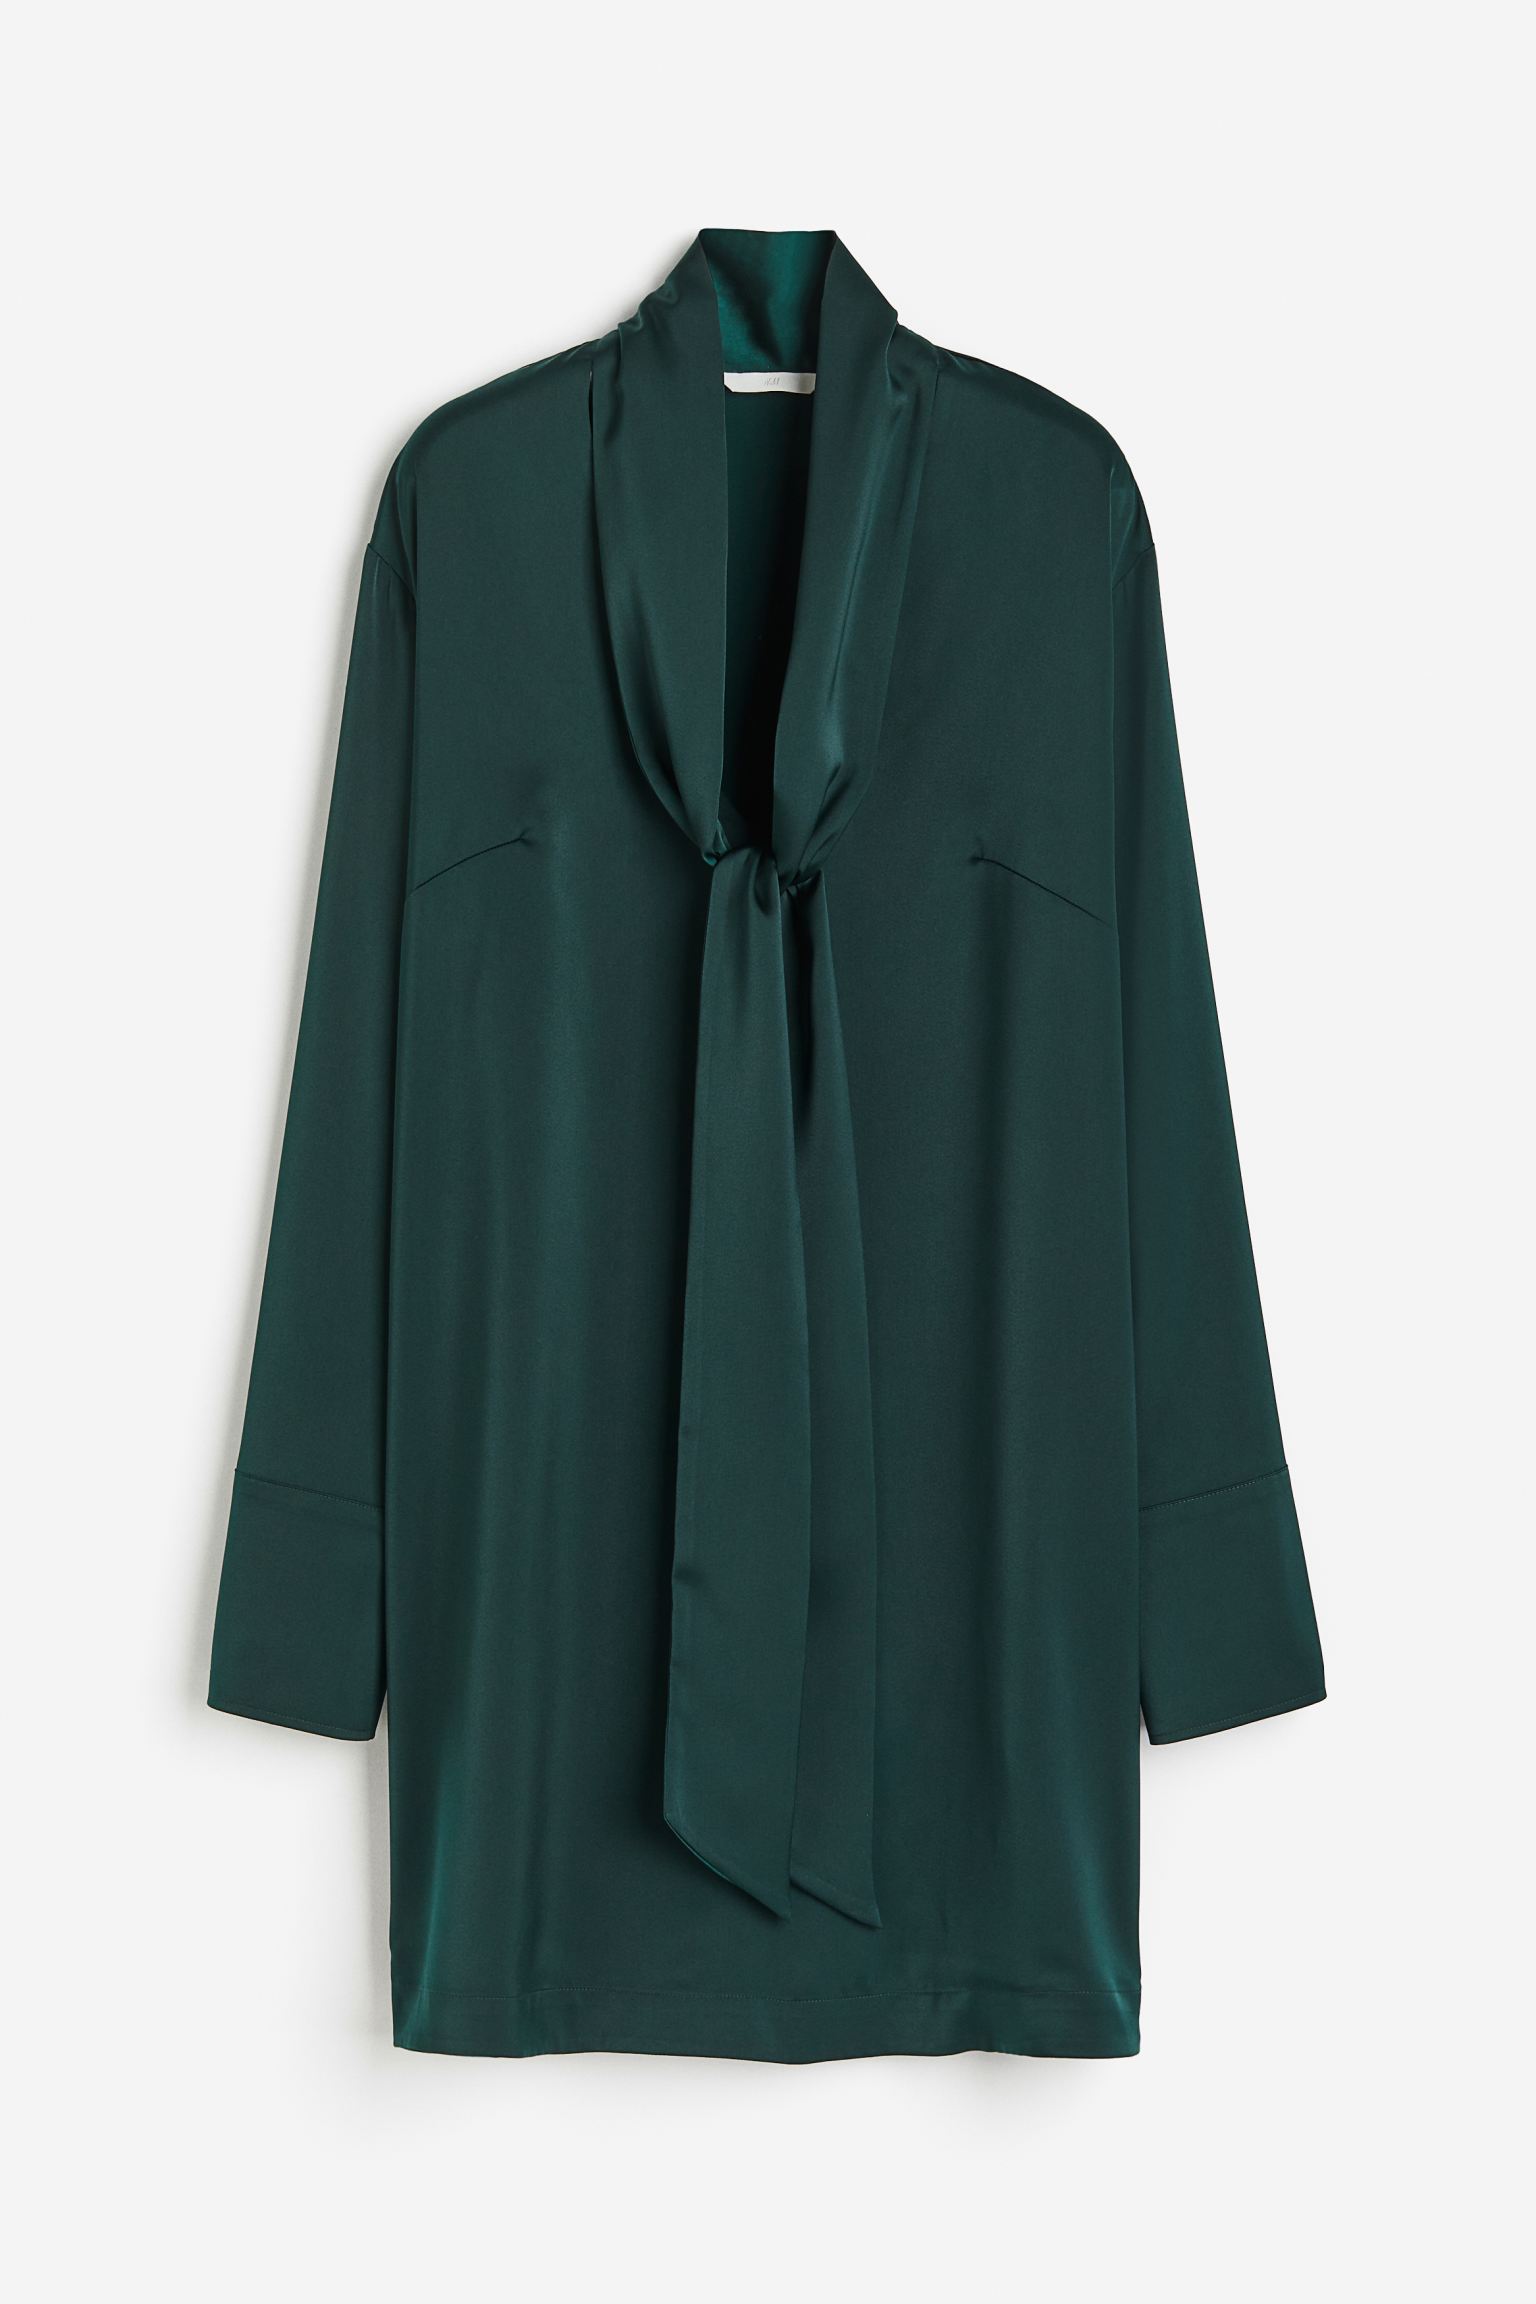 Платье H&M Tie-detail Satin, темно-зеленый платье короткое v образный вырез короткие рукава 40 черный